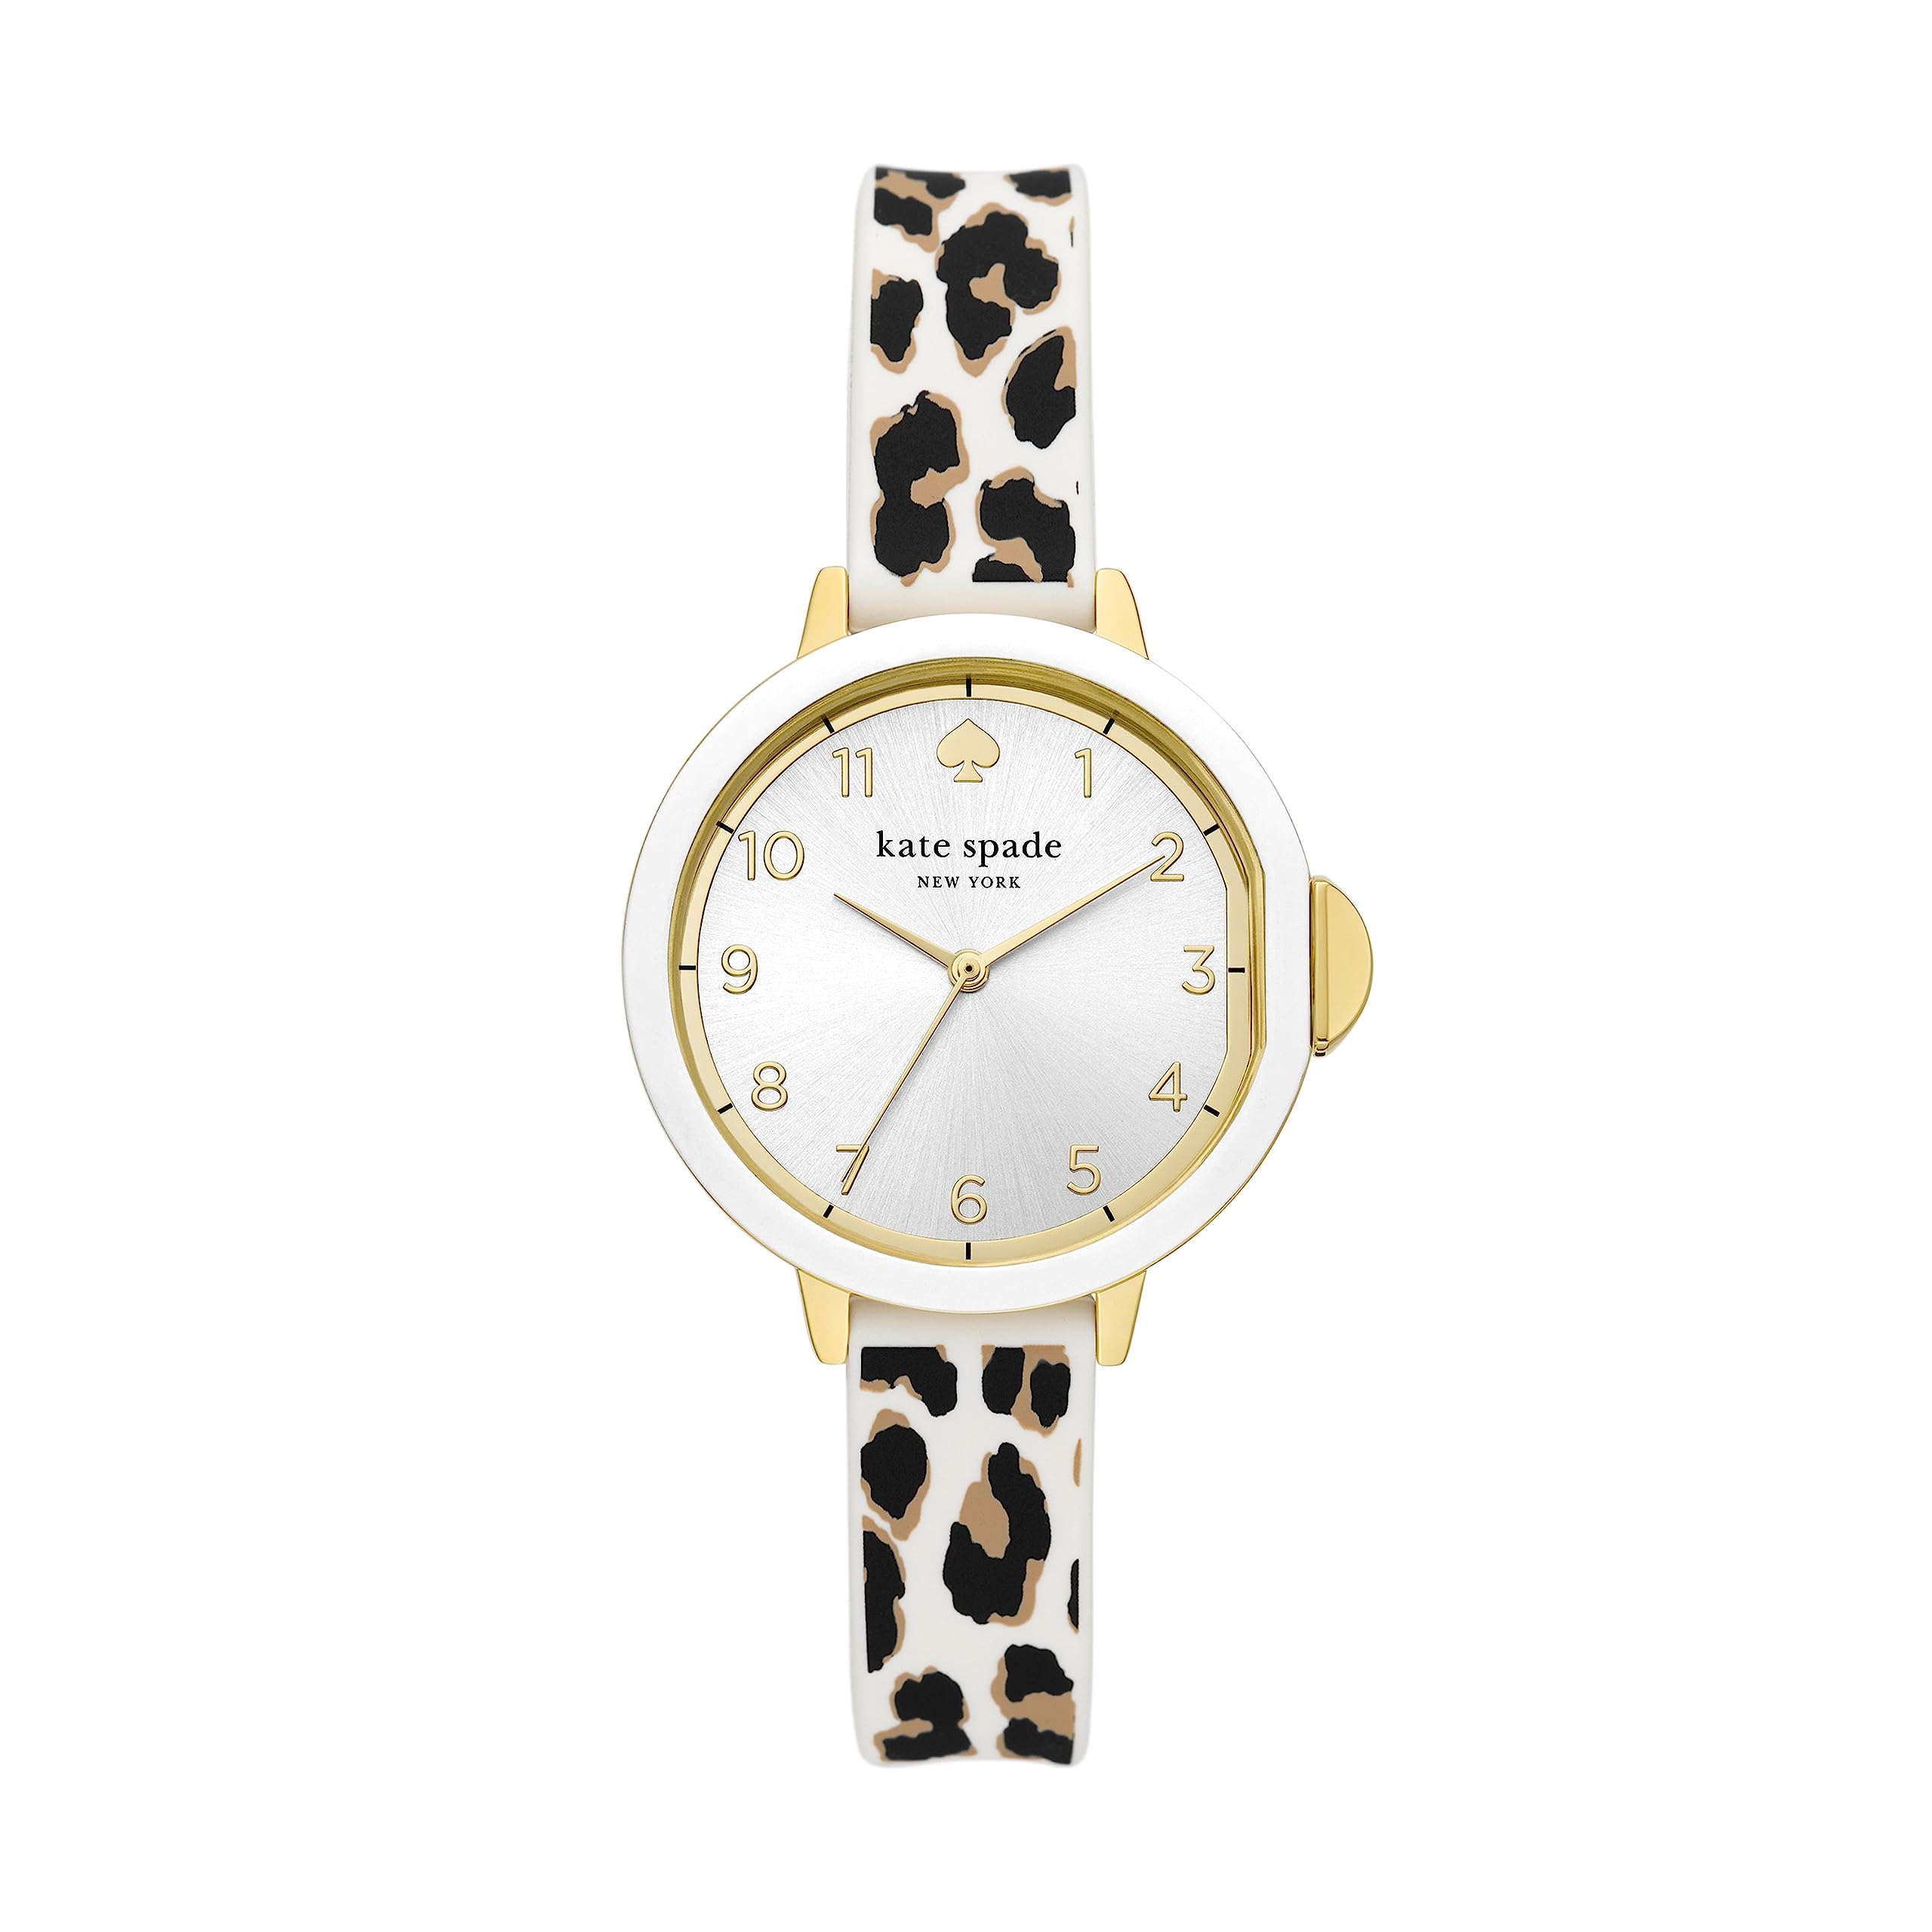 Силиконовые часы с леопардовым принтом Park Row с тремя стрелками — KSW1811 Kate Spade New York